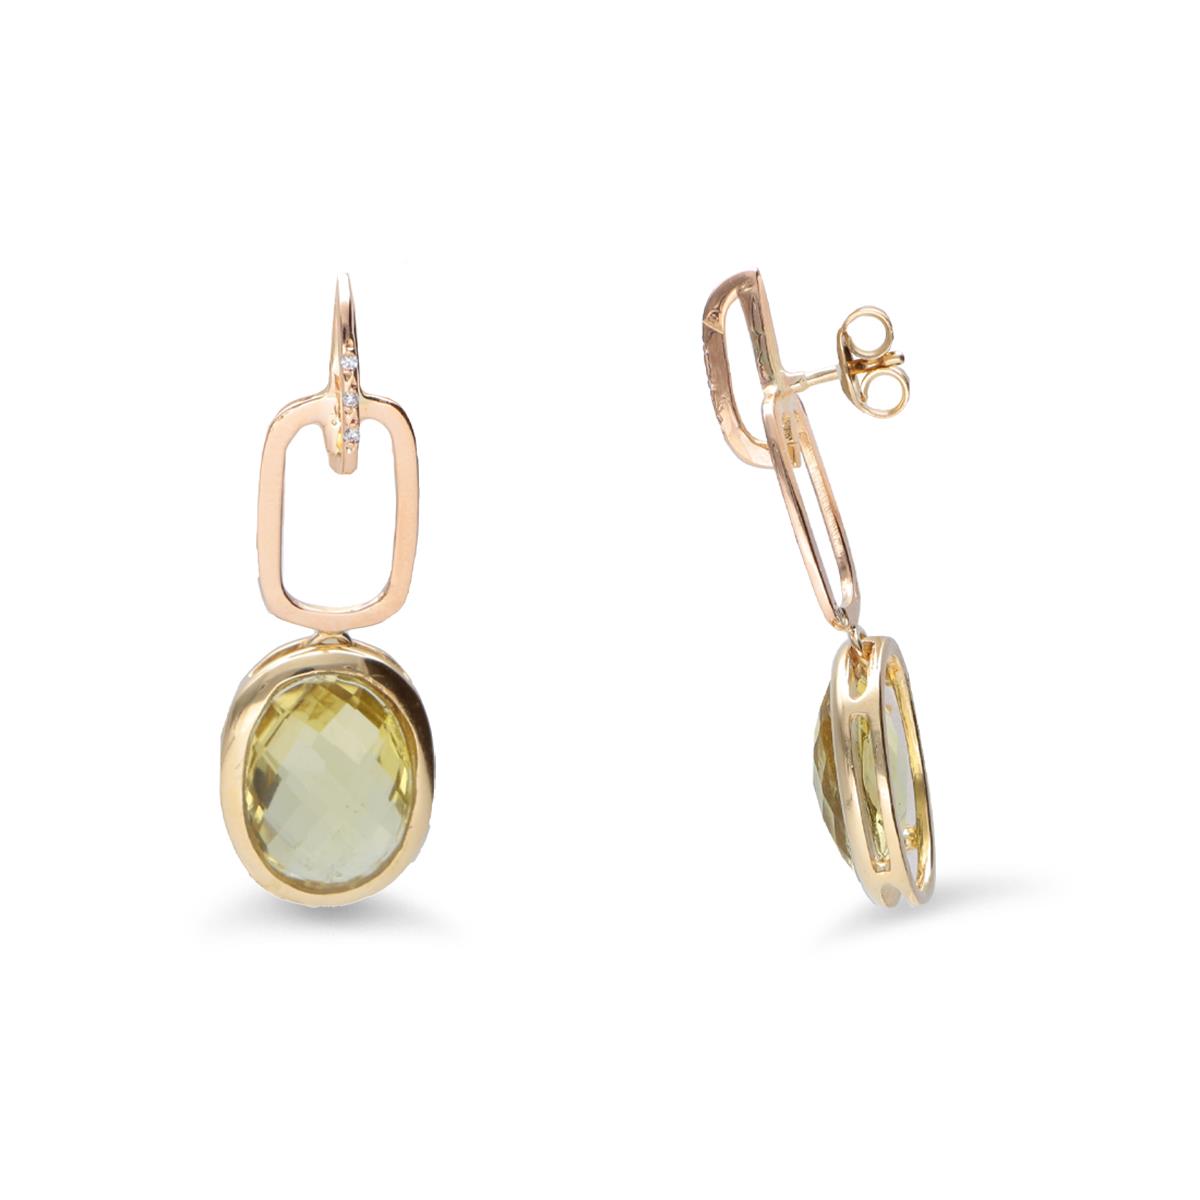 Gold pendant earrings with lemon quartz and diamonds - STANOPPI